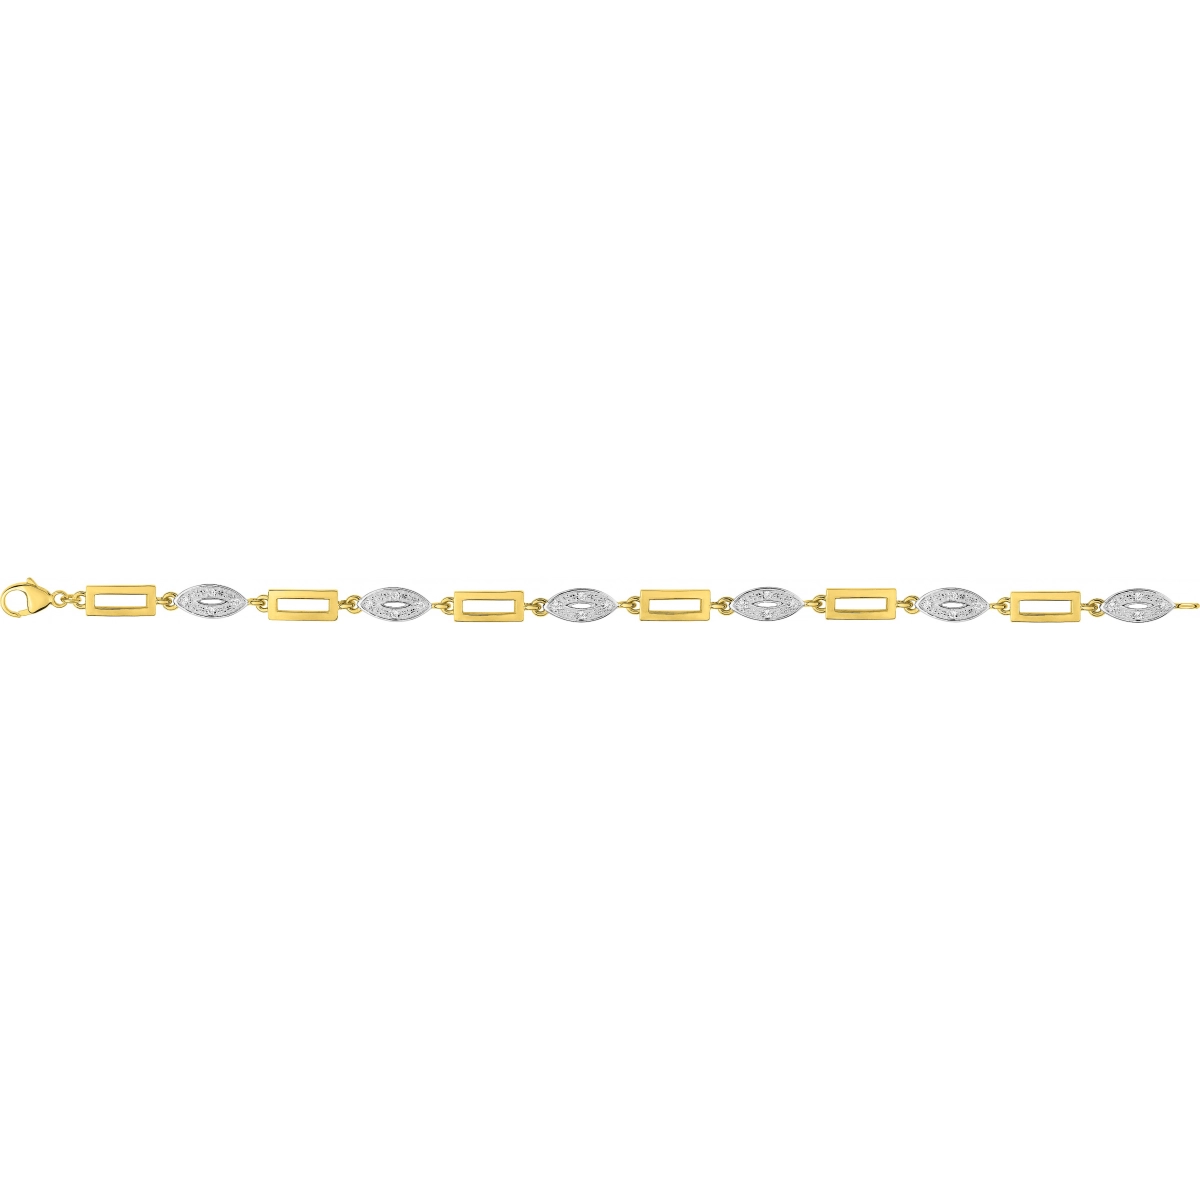 Bracelet 18cm w. cz gold plated Brass 2TG  Lua Blanca  BSBF73Z18.0